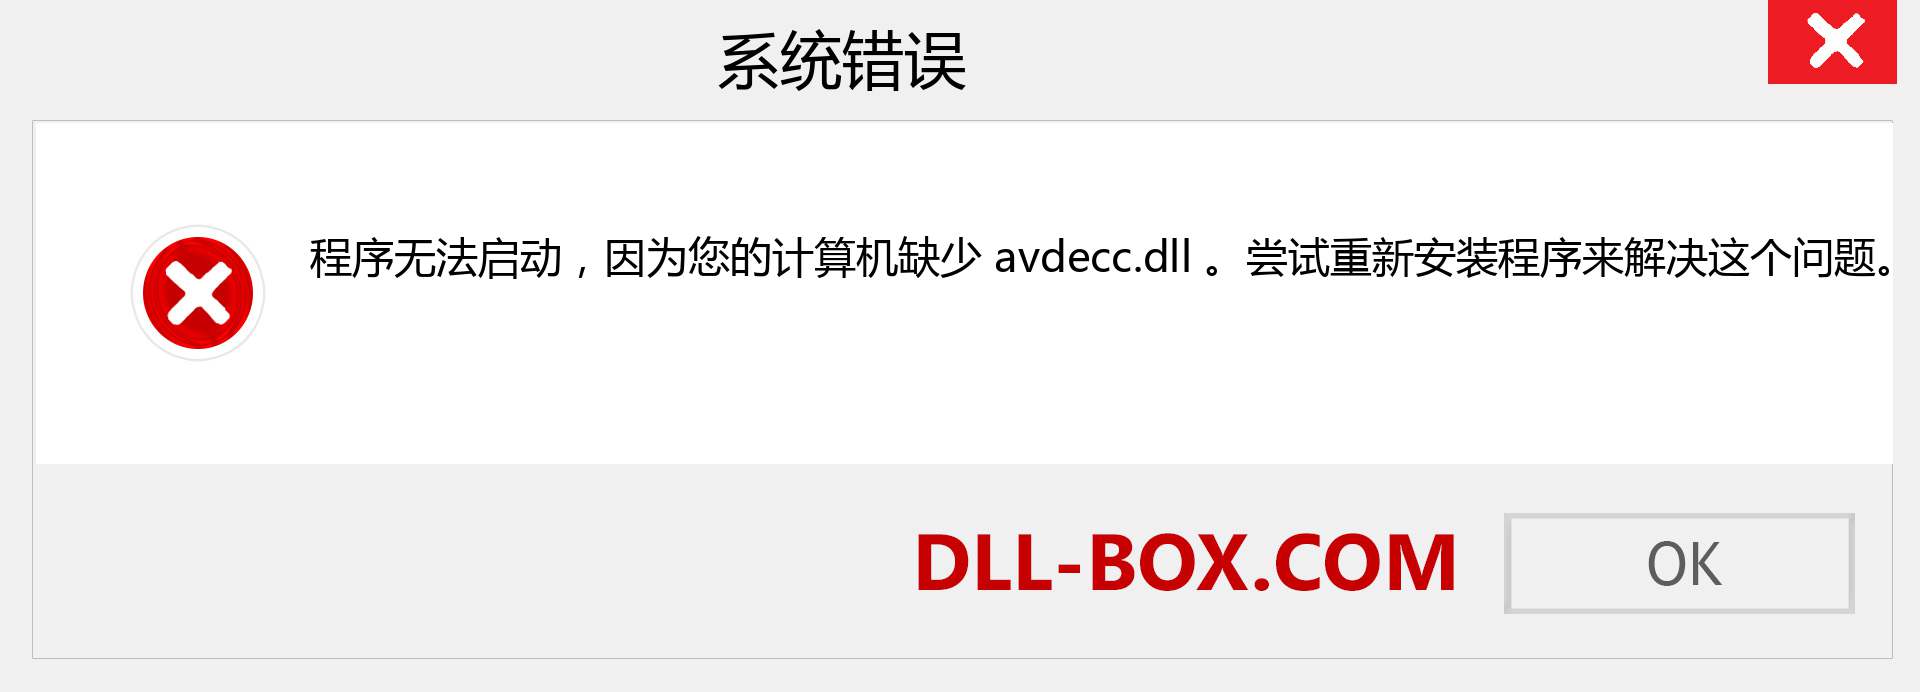 avdecc.dll 文件丢失？。 适用于 Windows 7、8、10 的下载 - 修复 Windows、照片、图像上的 avdecc dll 丢失错误